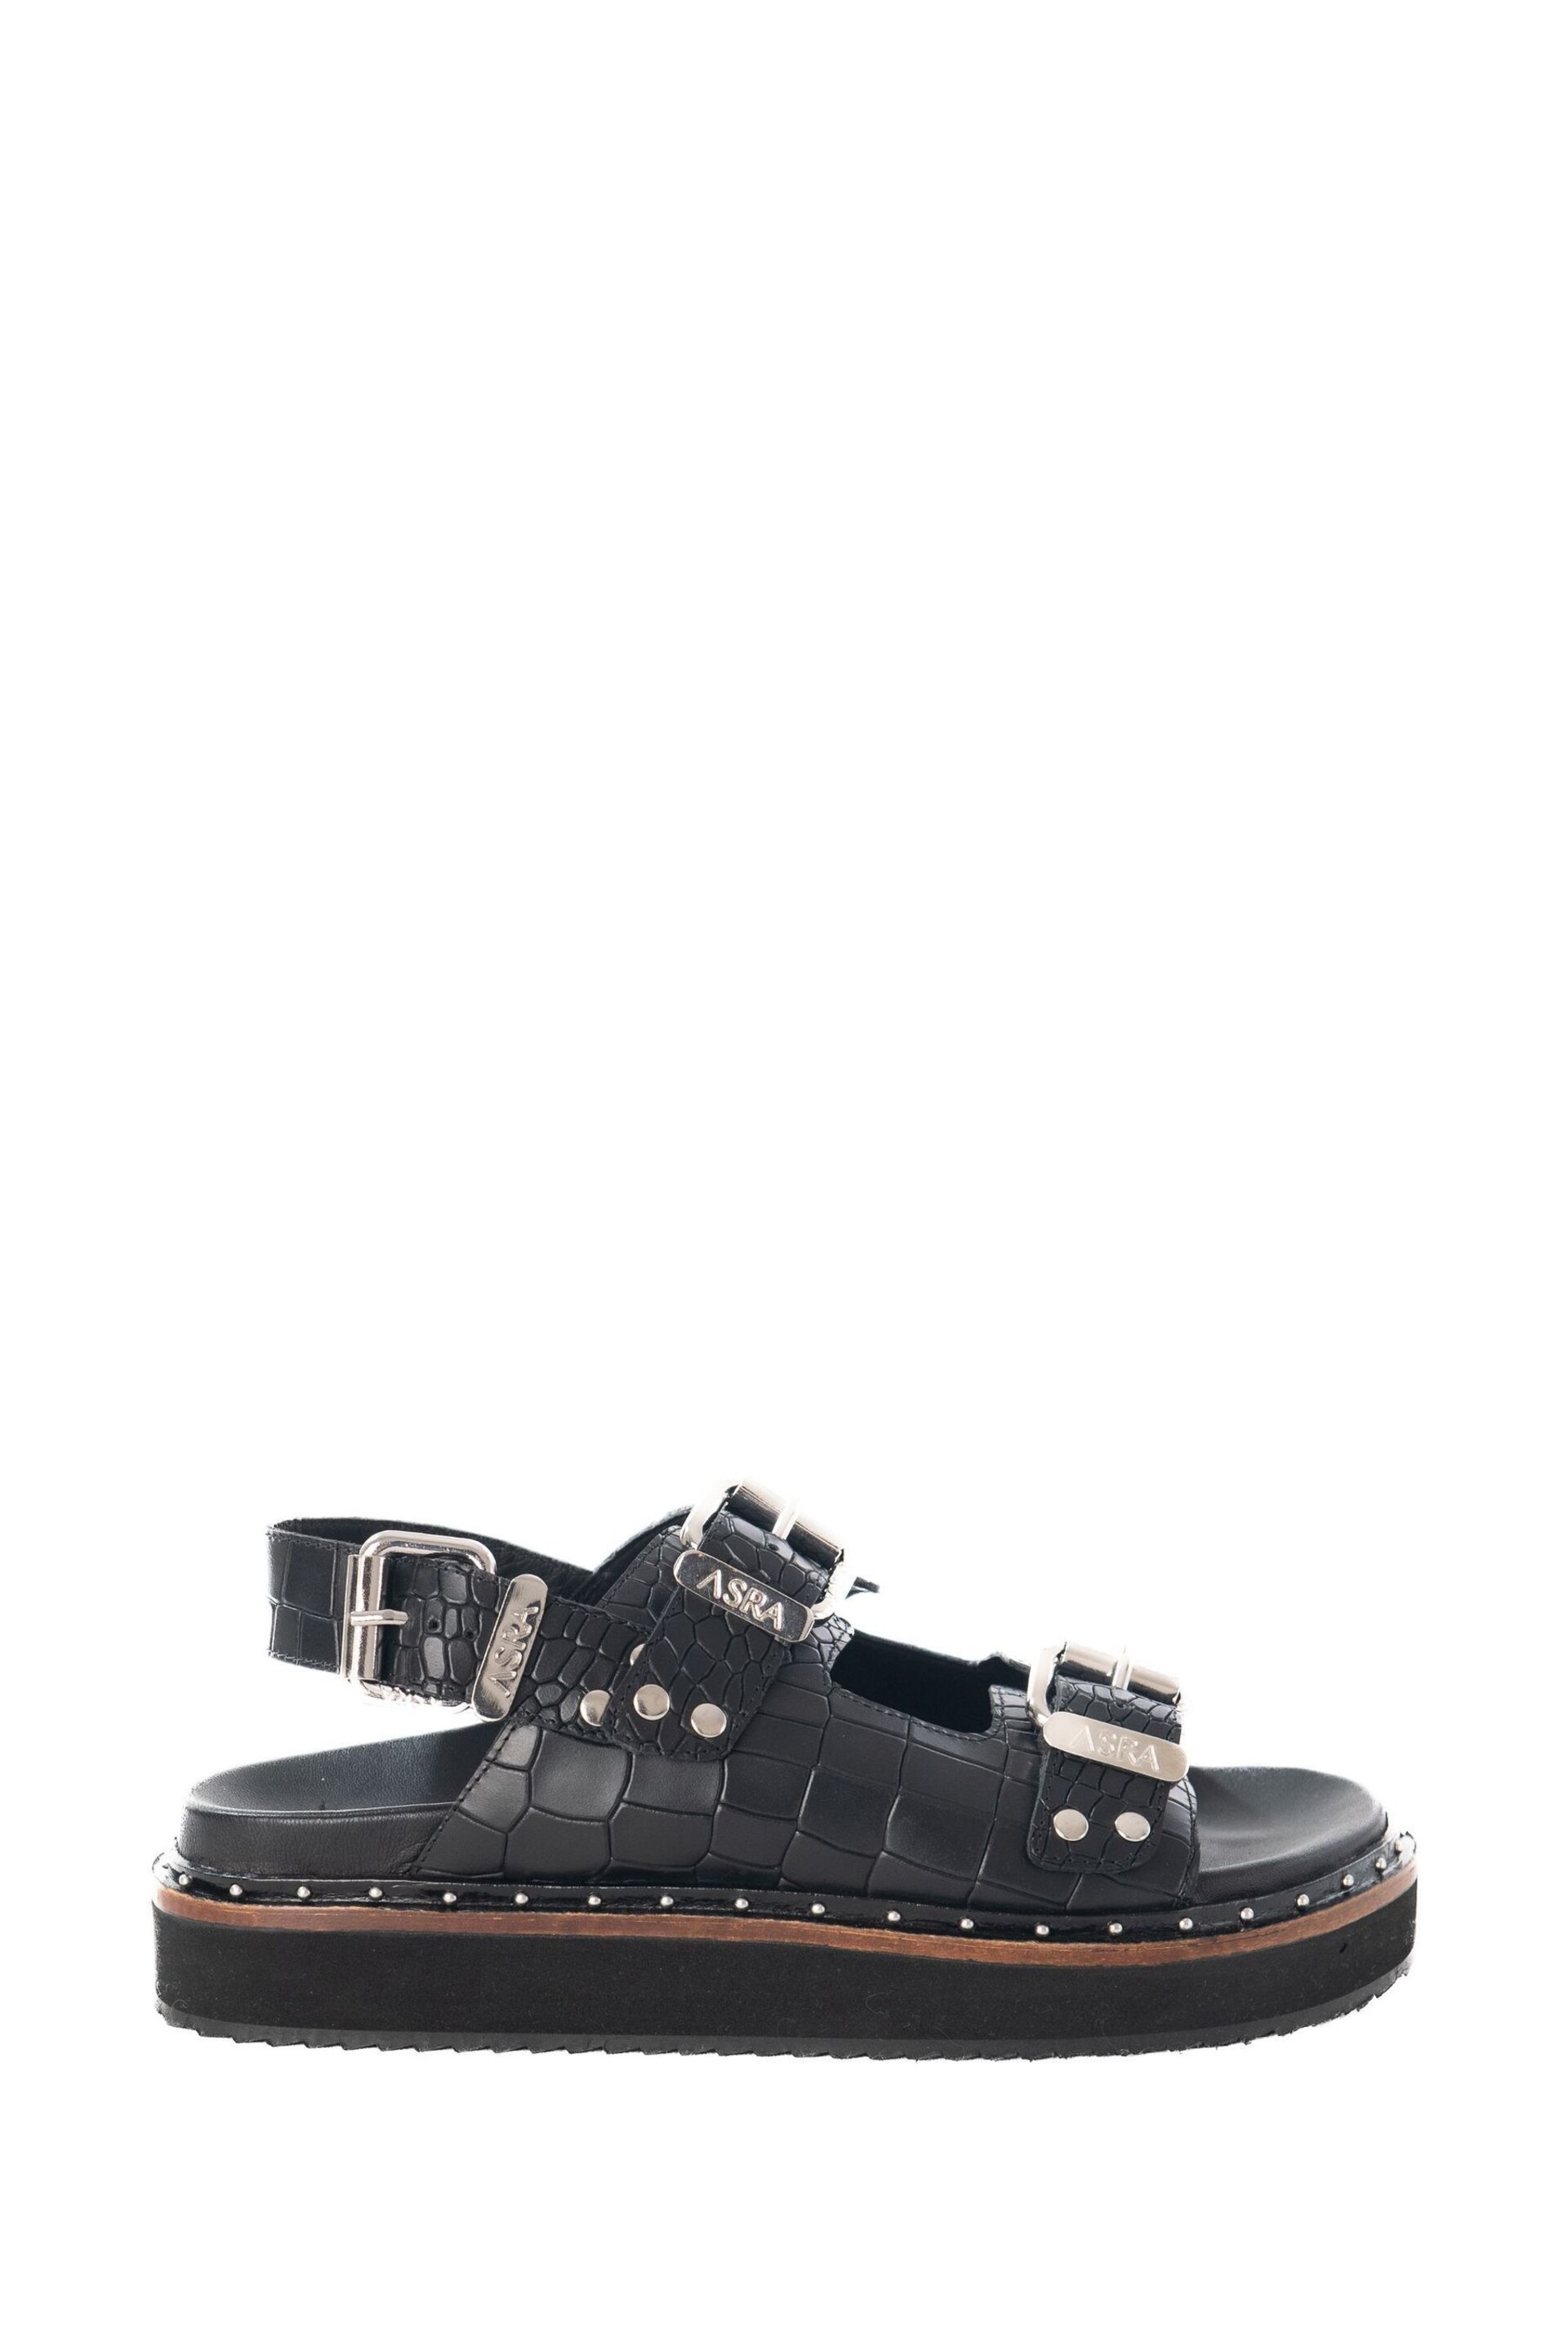 ASRA London Sami Croc Leather Studded Black Sandals - Image 1 of 4